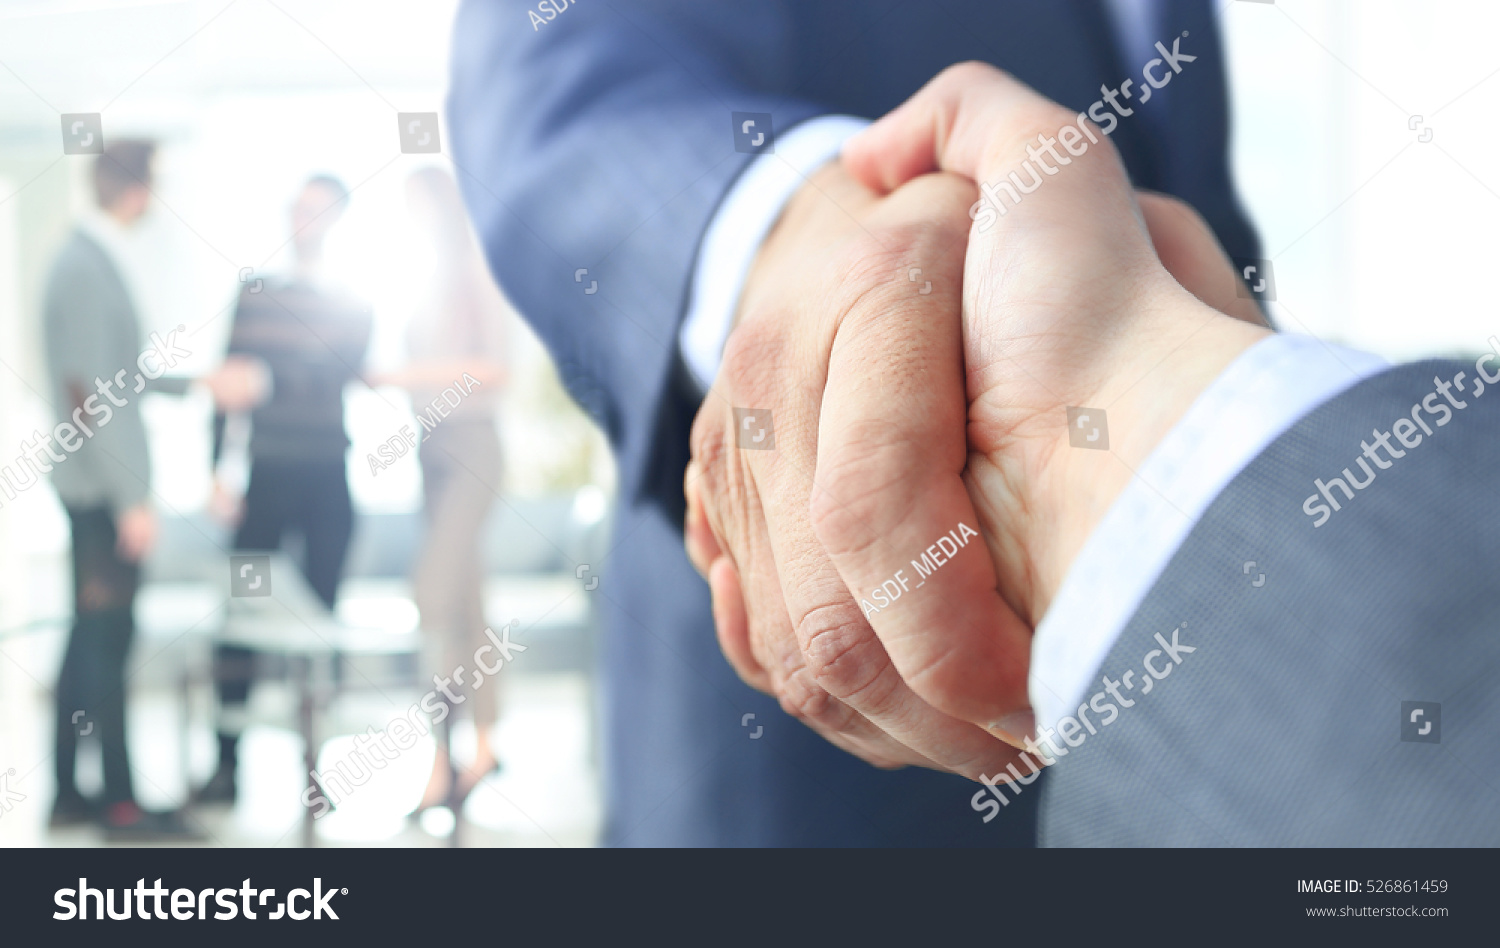 Closeup of a business handshake #526861459